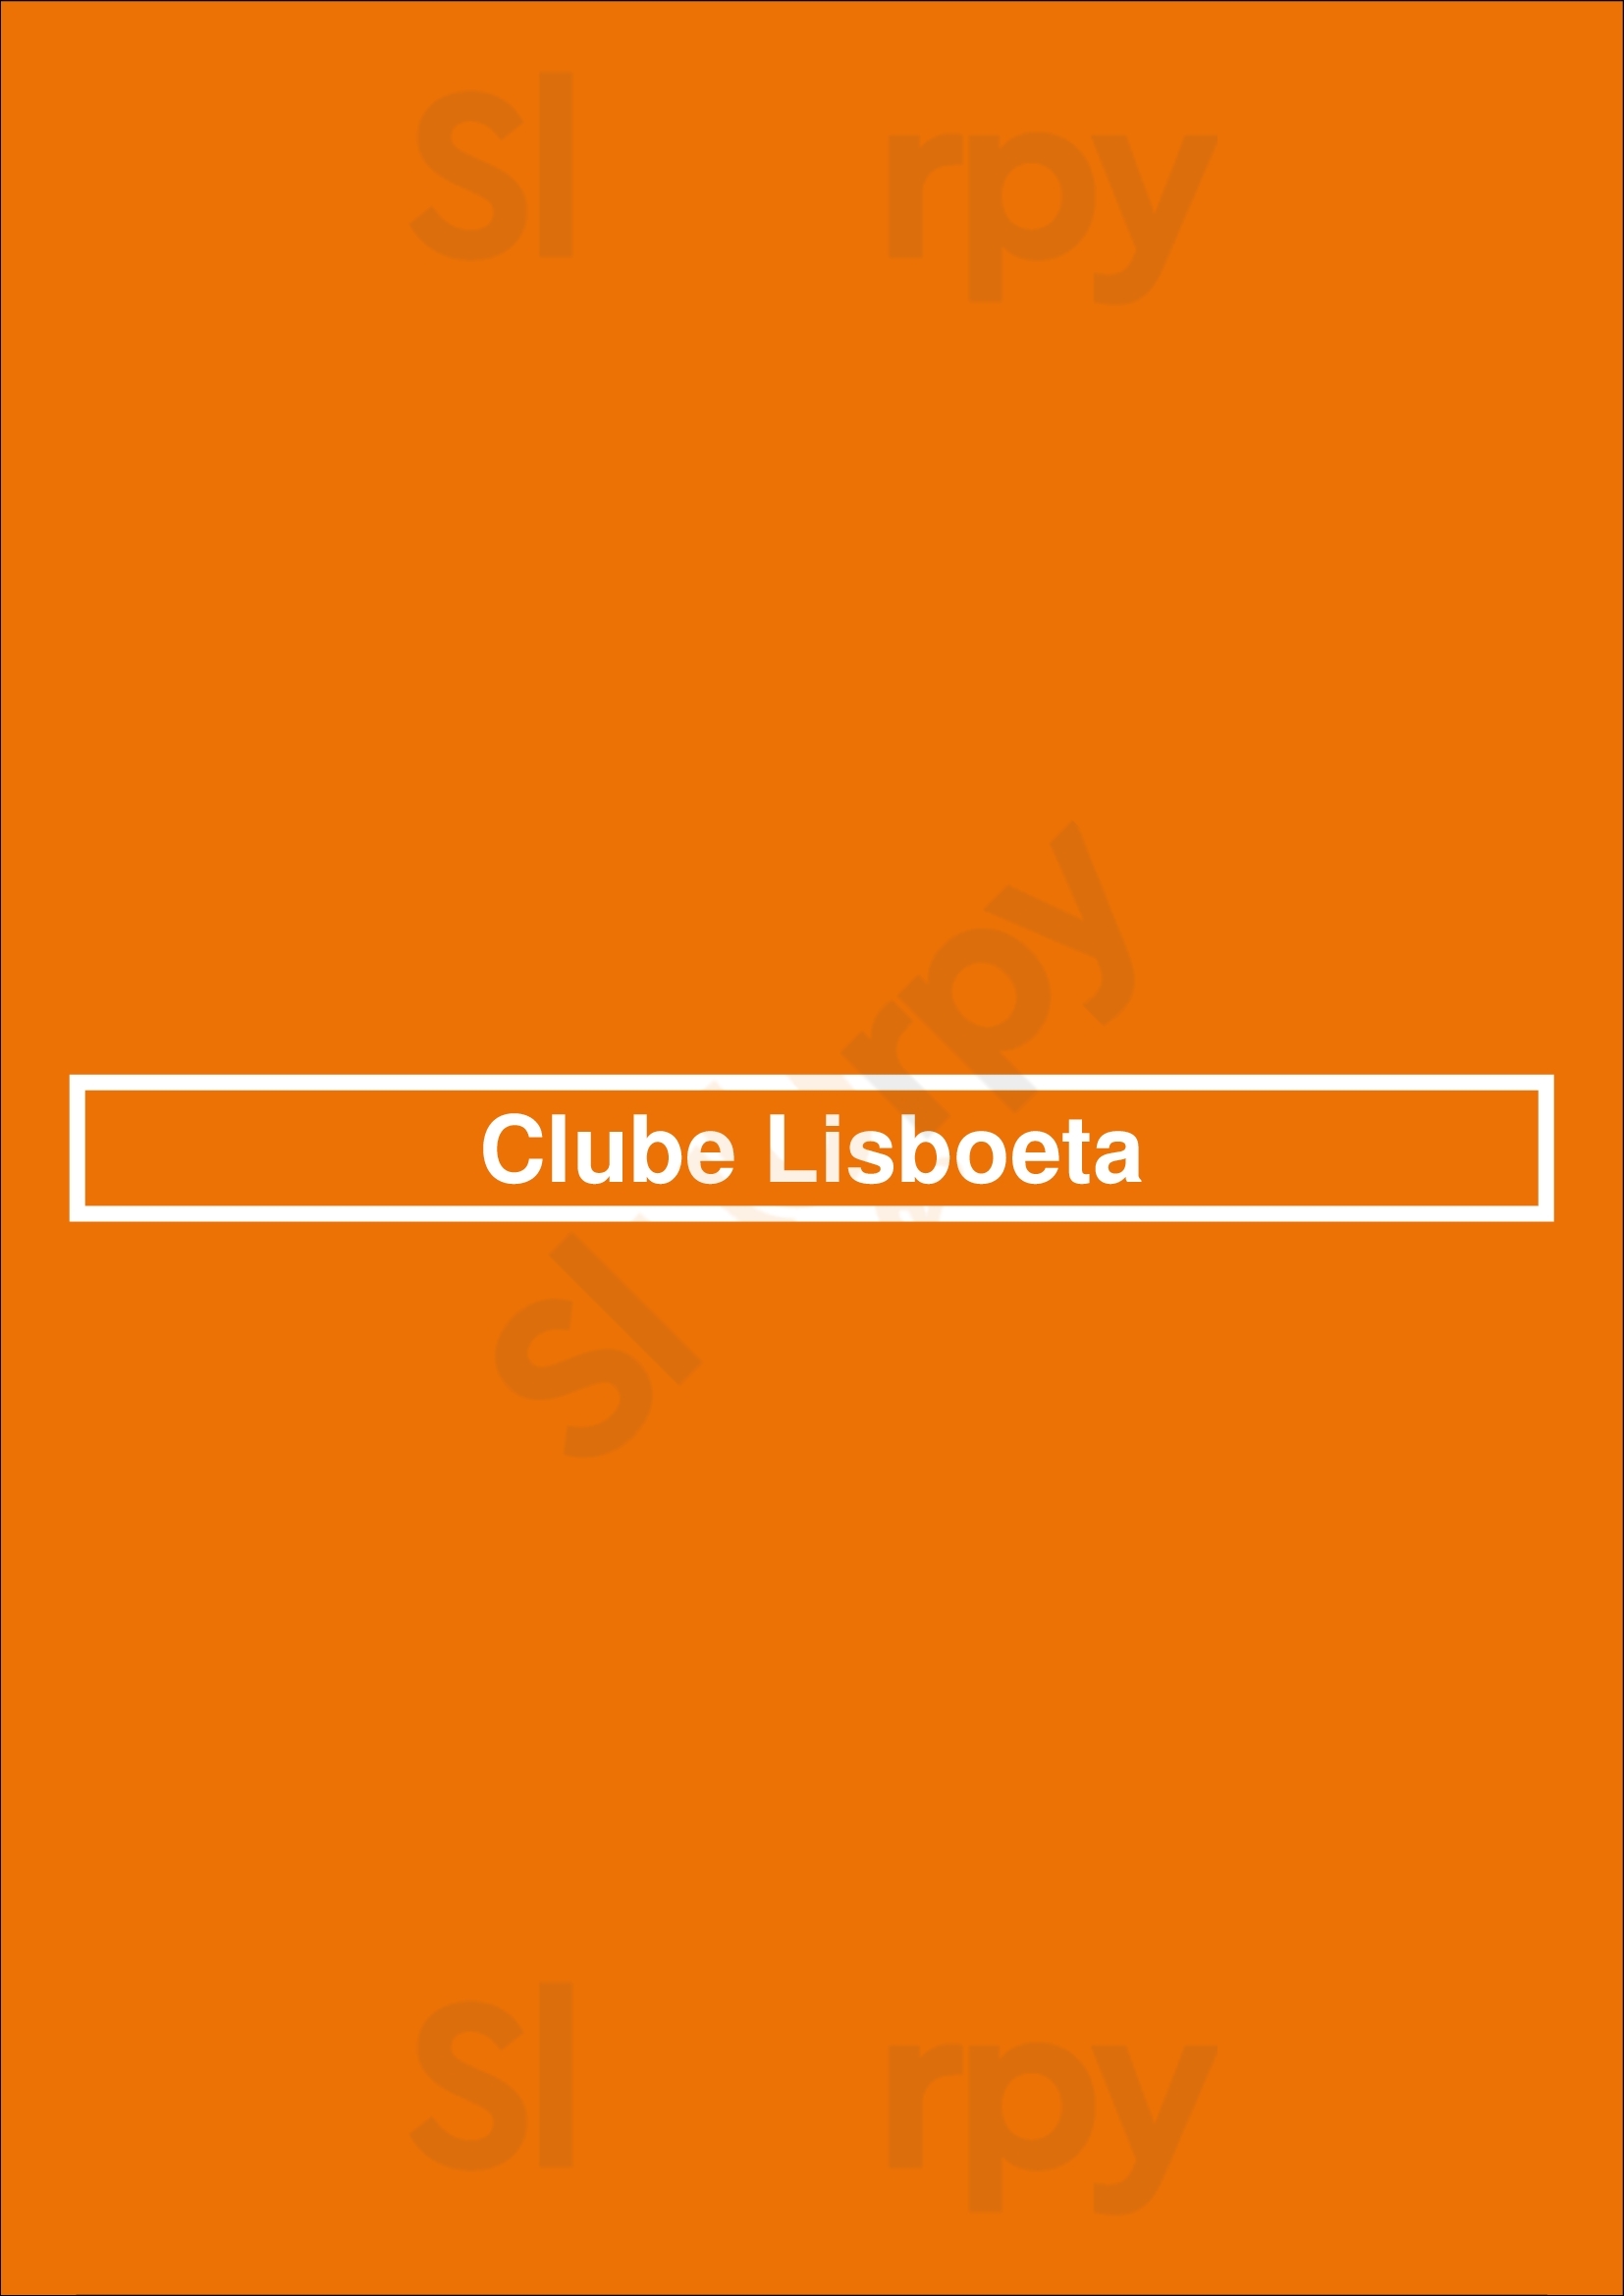 Clube Lisboeta Lisboa Menu - 1